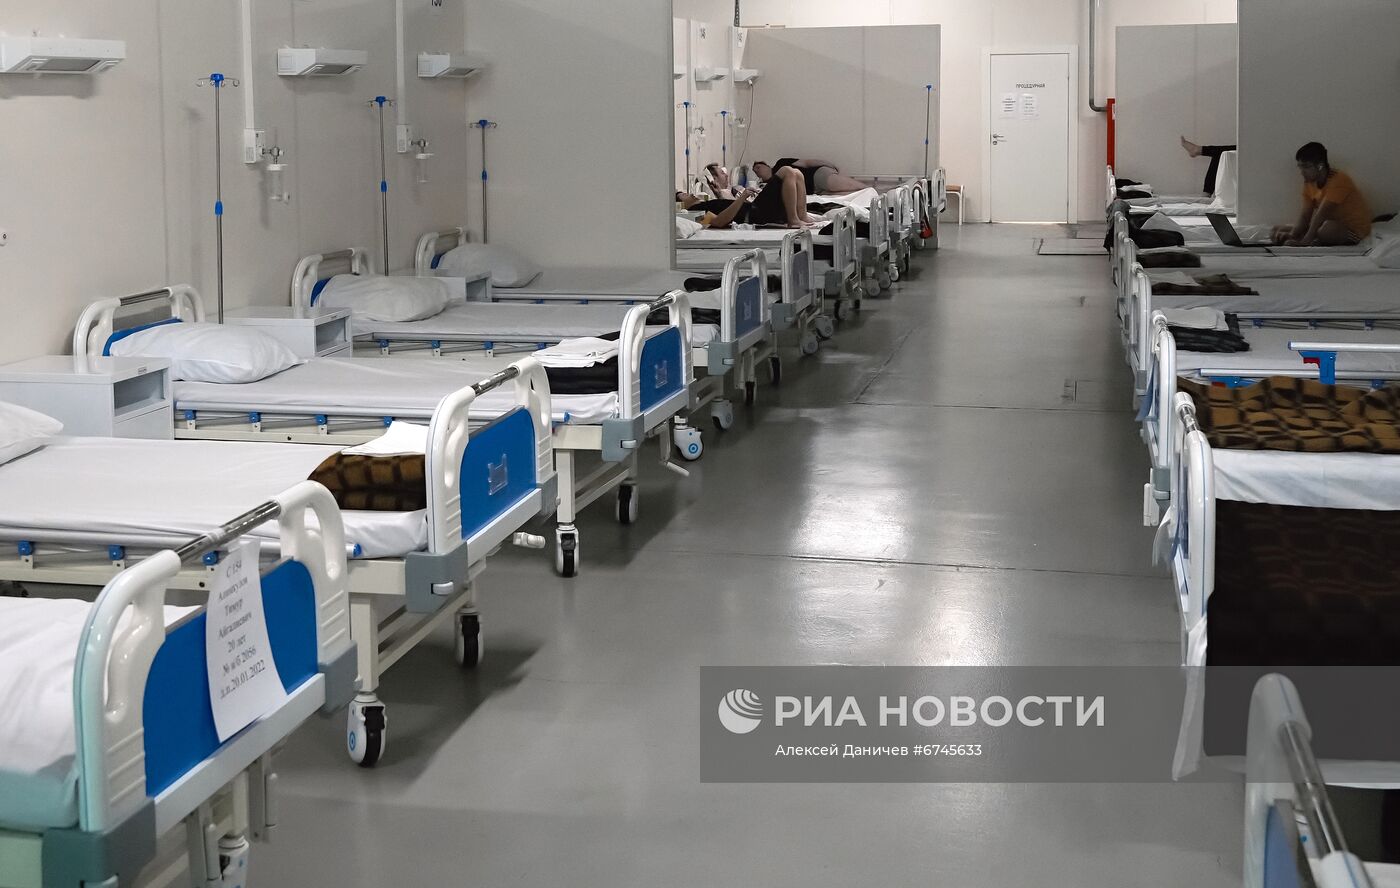 Госпиталь "Ленэкспо" для пациентов с Covid-19 в Санкт-Петербурге